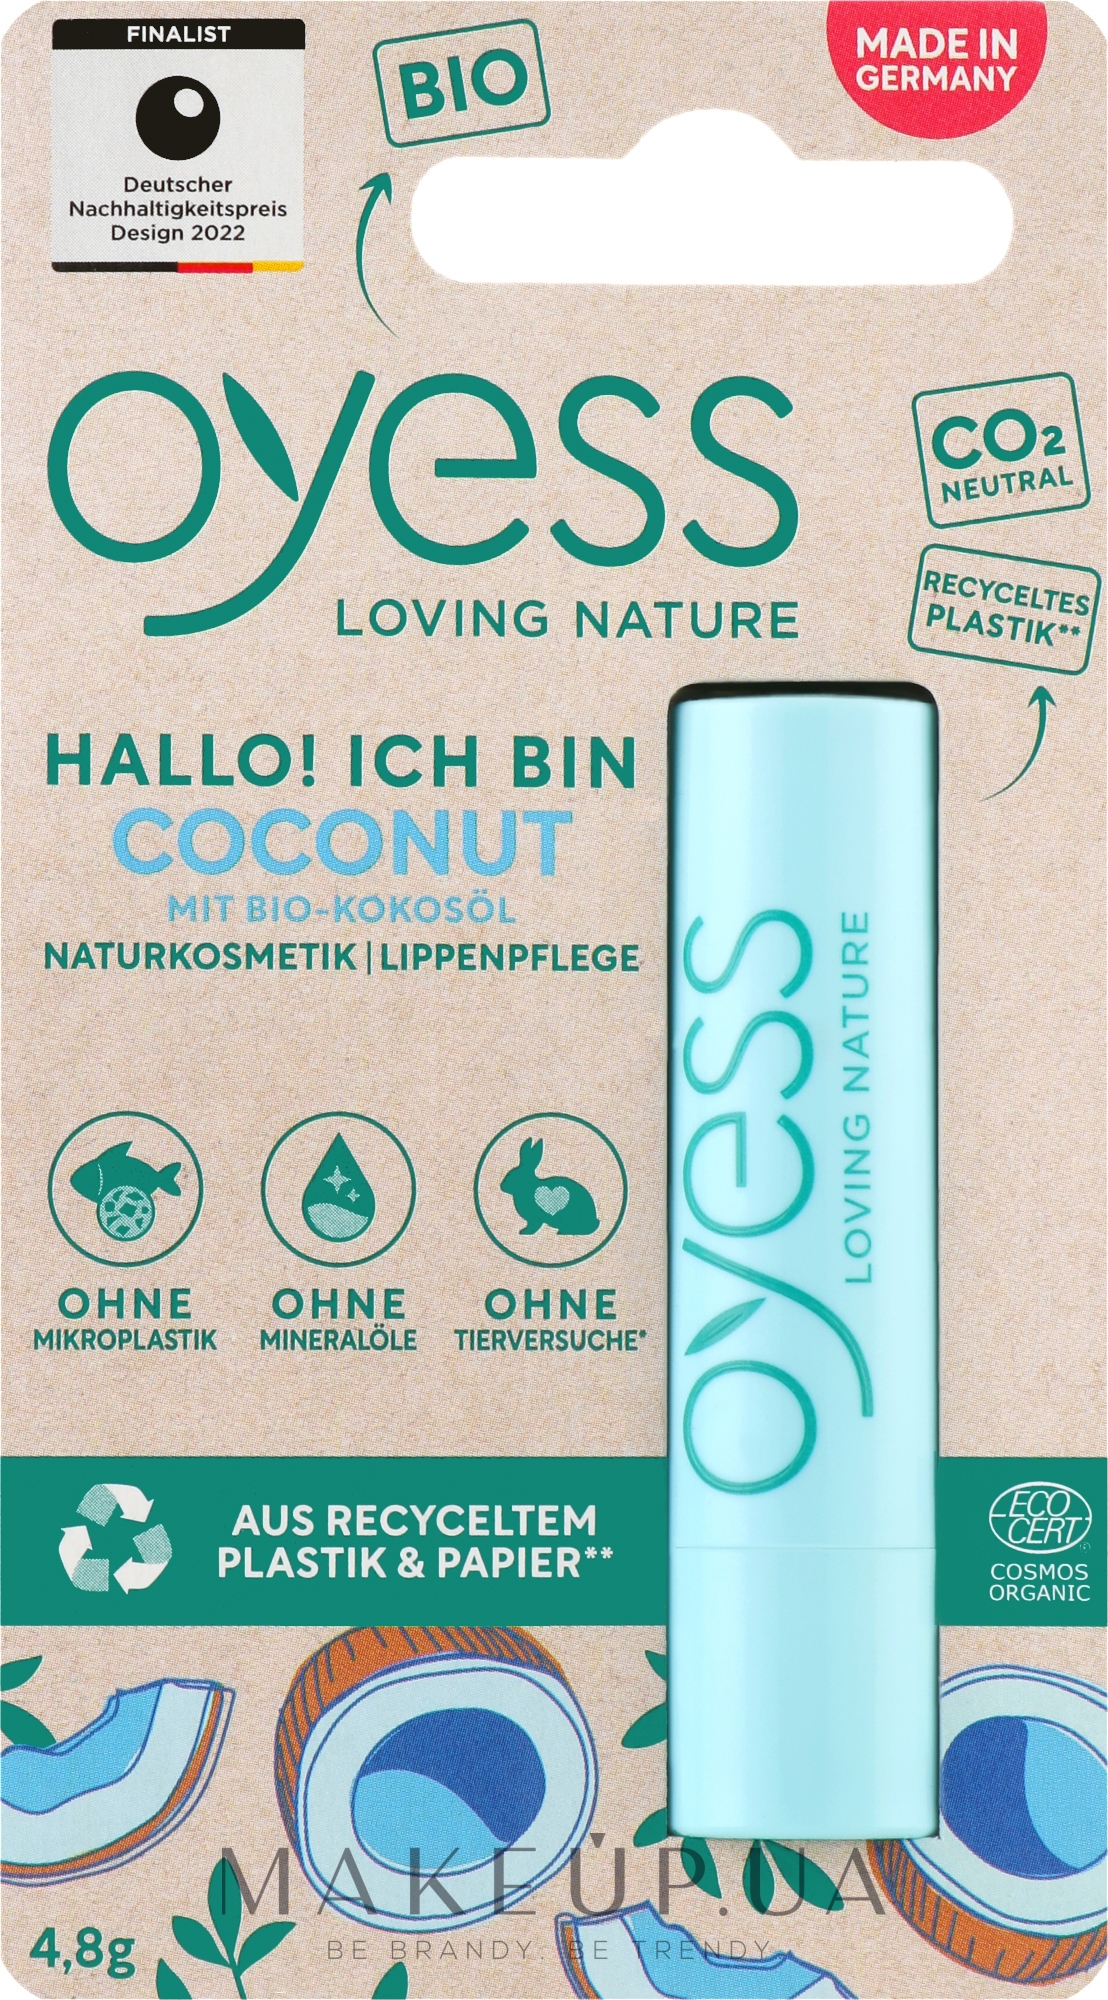 Гігієнічна помада-бальзам для губ "Coconut" - Oyess Lippenpflege — фото 4.8g